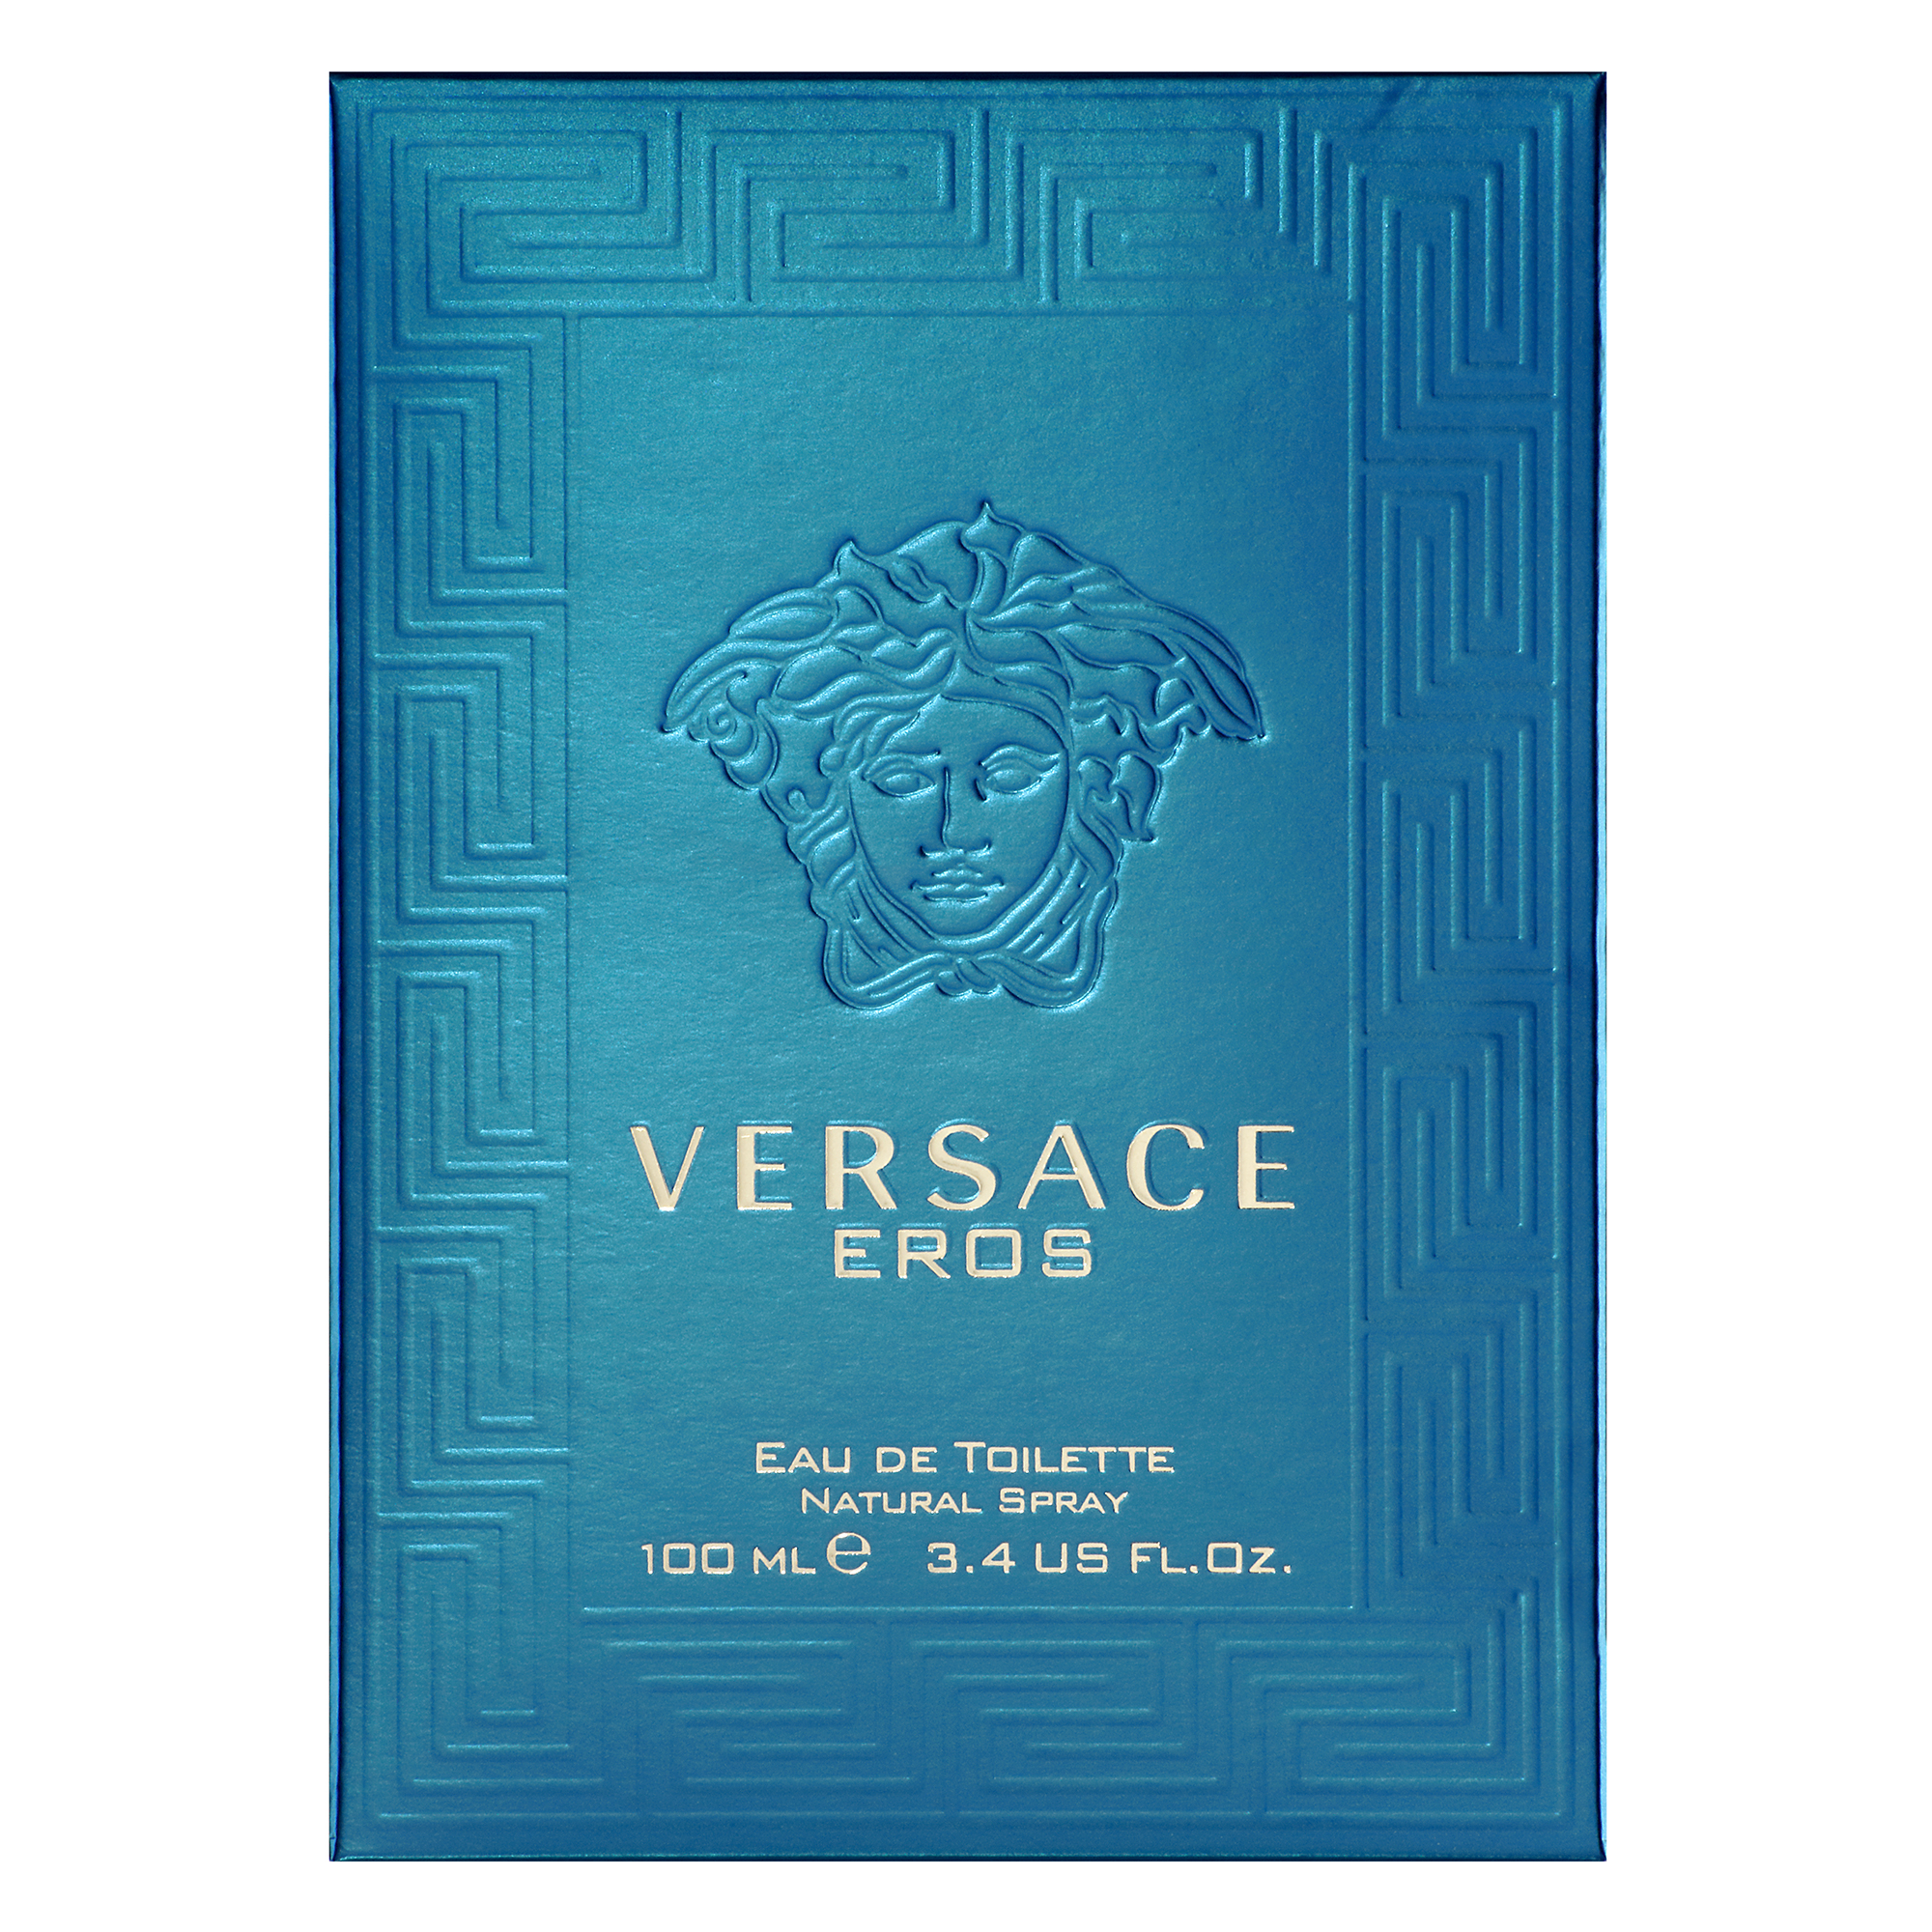 Versace Eros Eau de Toilette, Cologne for Men, 3.4 oz - image 3 of 5